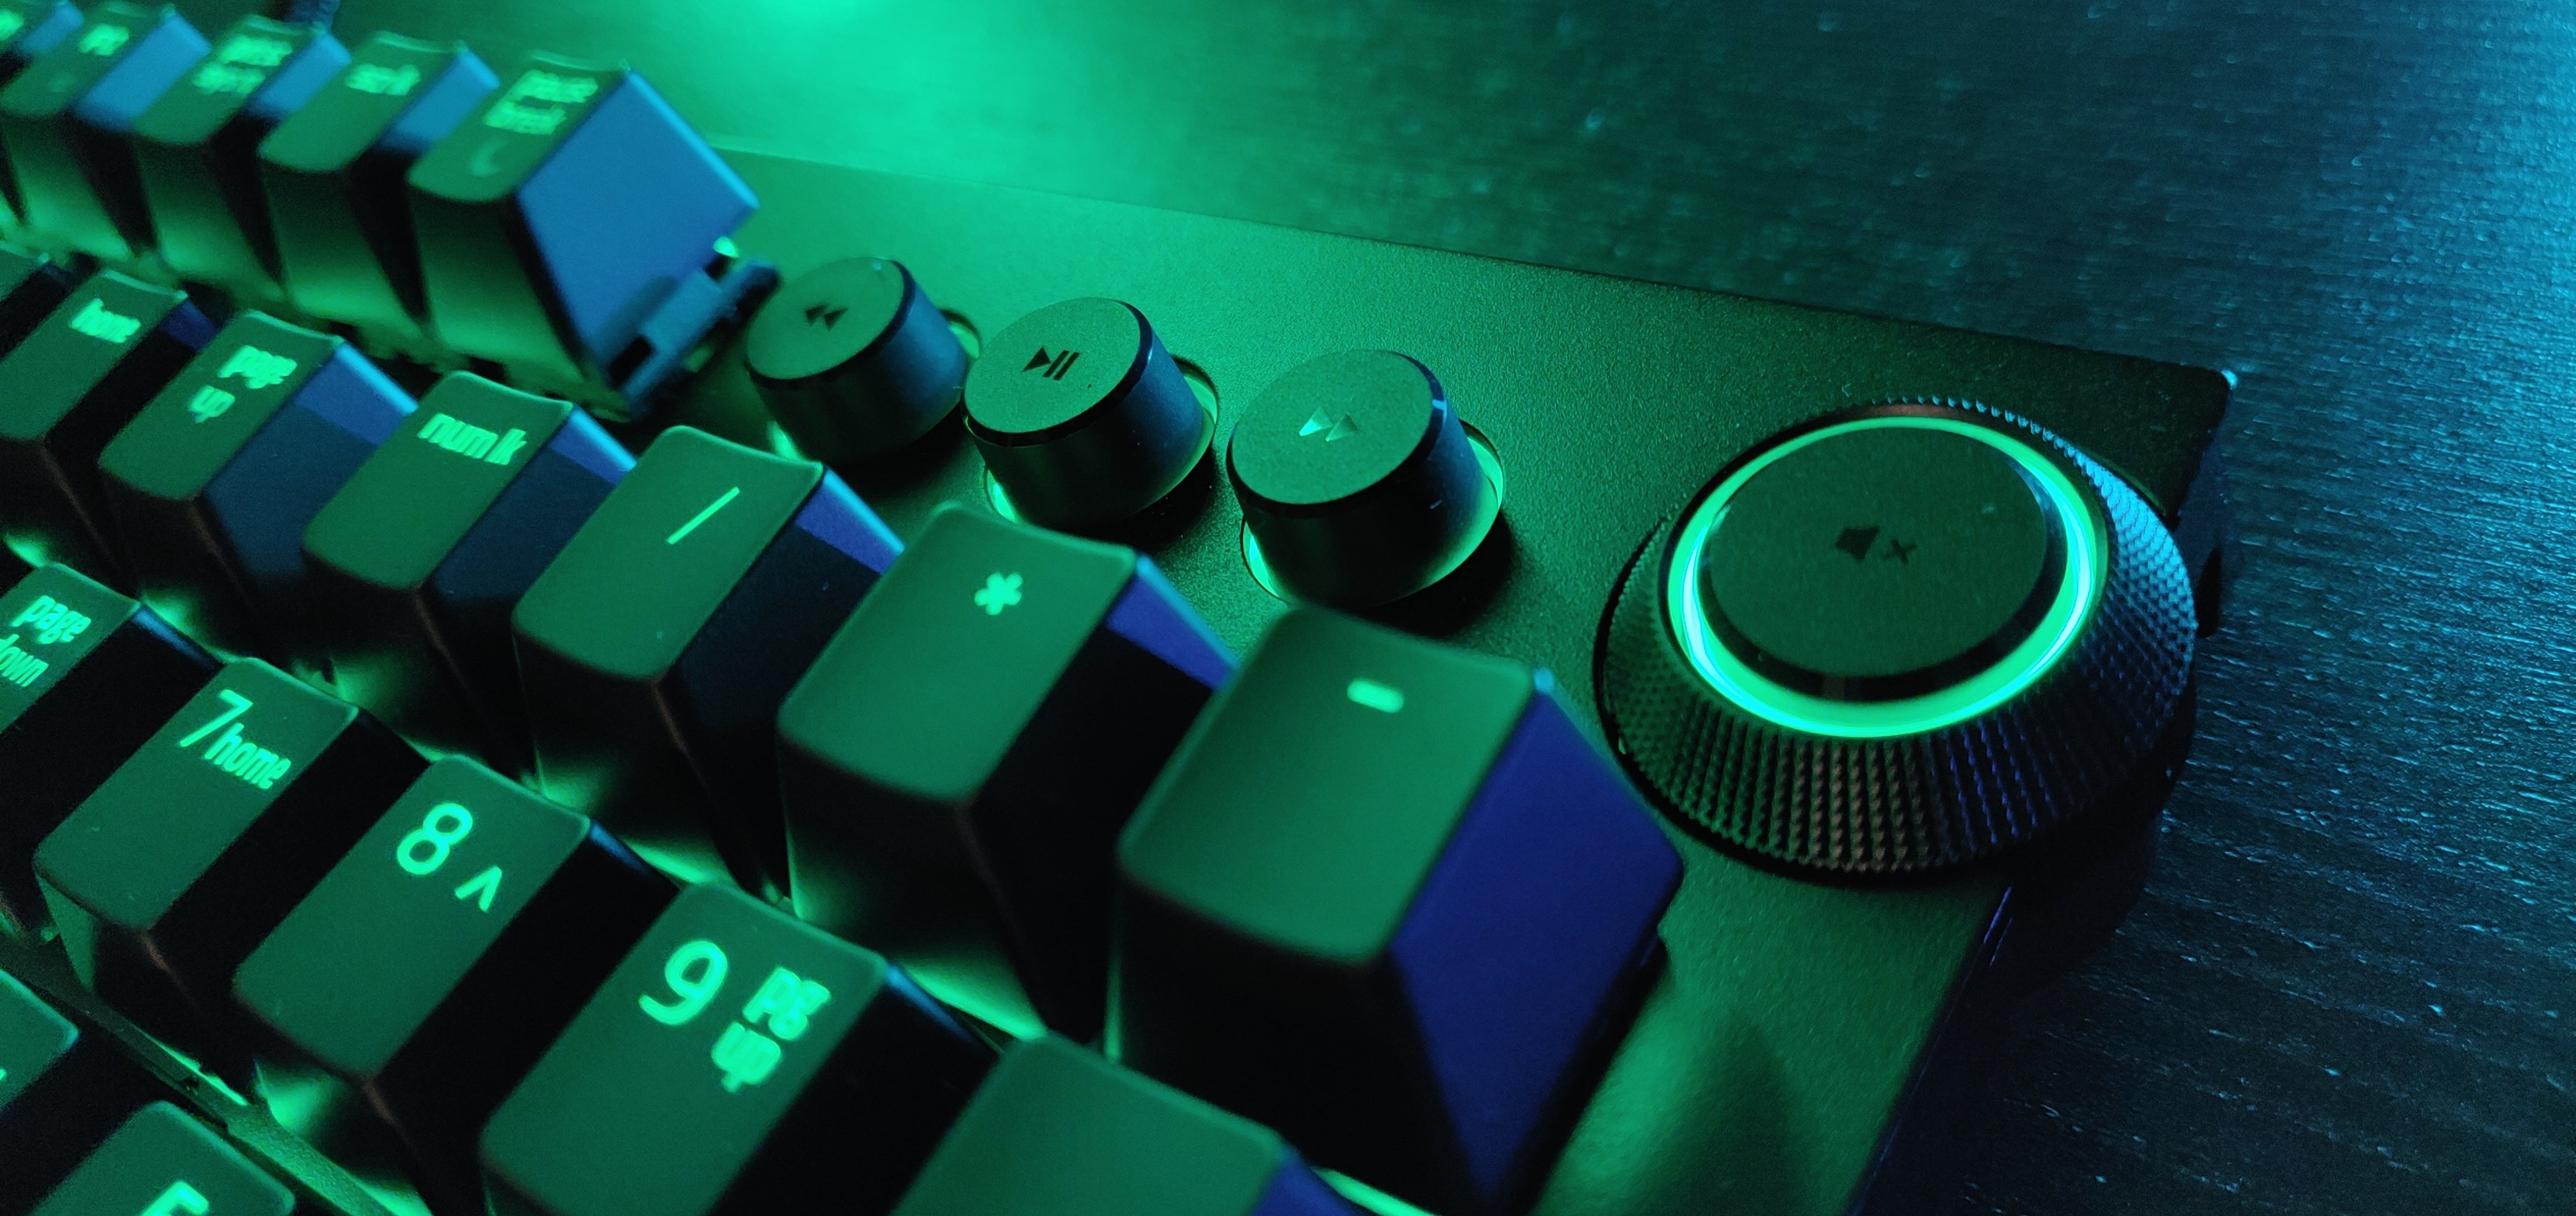 Razer BlackWidow Elite review: Finally, Razer's flagship keyboard gets